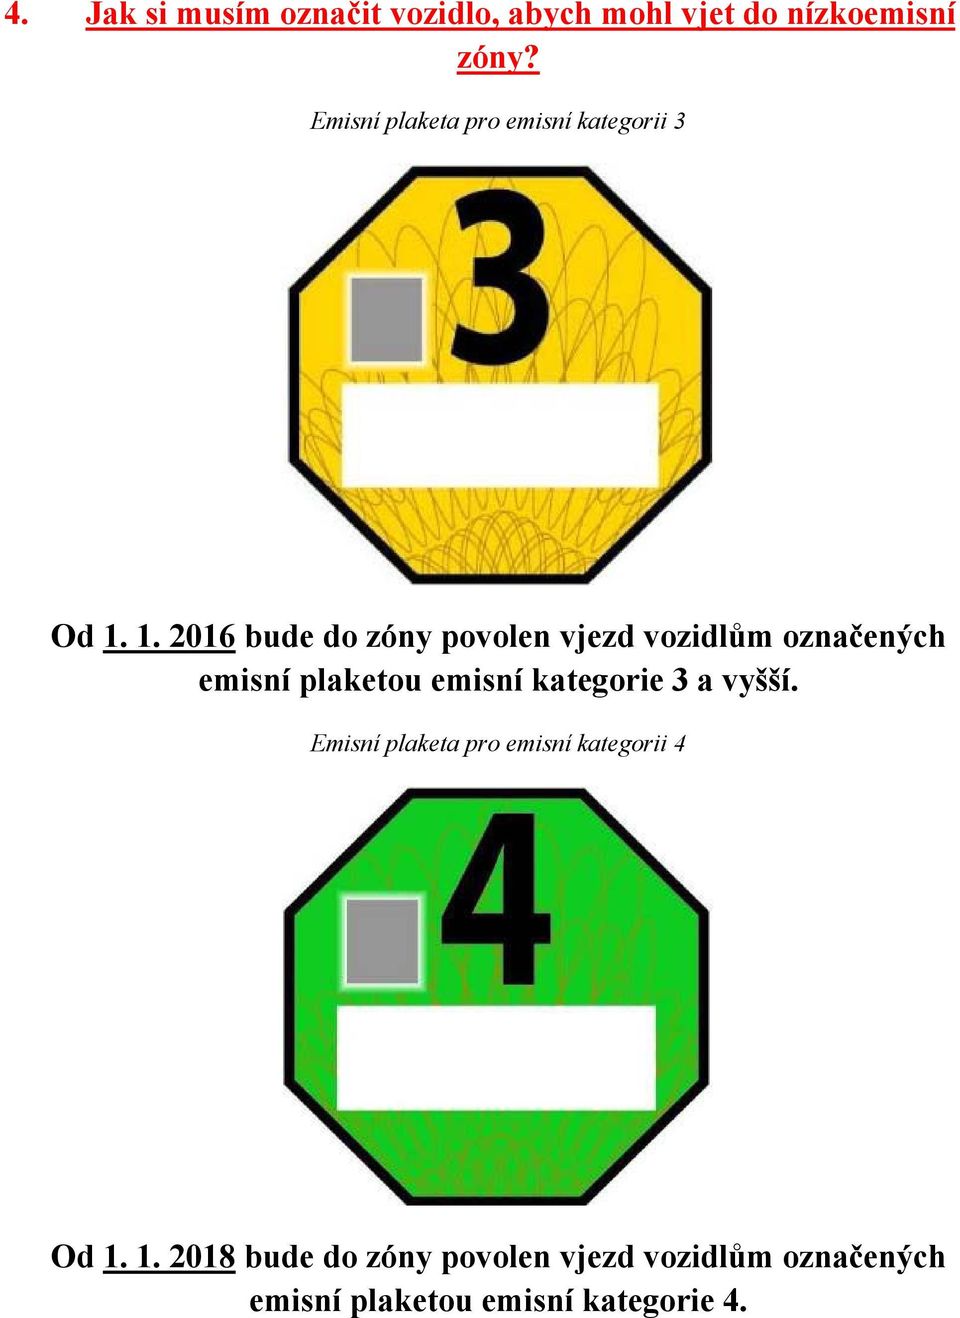 1. 2016 bude do zóny povolen vjezd vozidlům označených emisní plaketou emisní